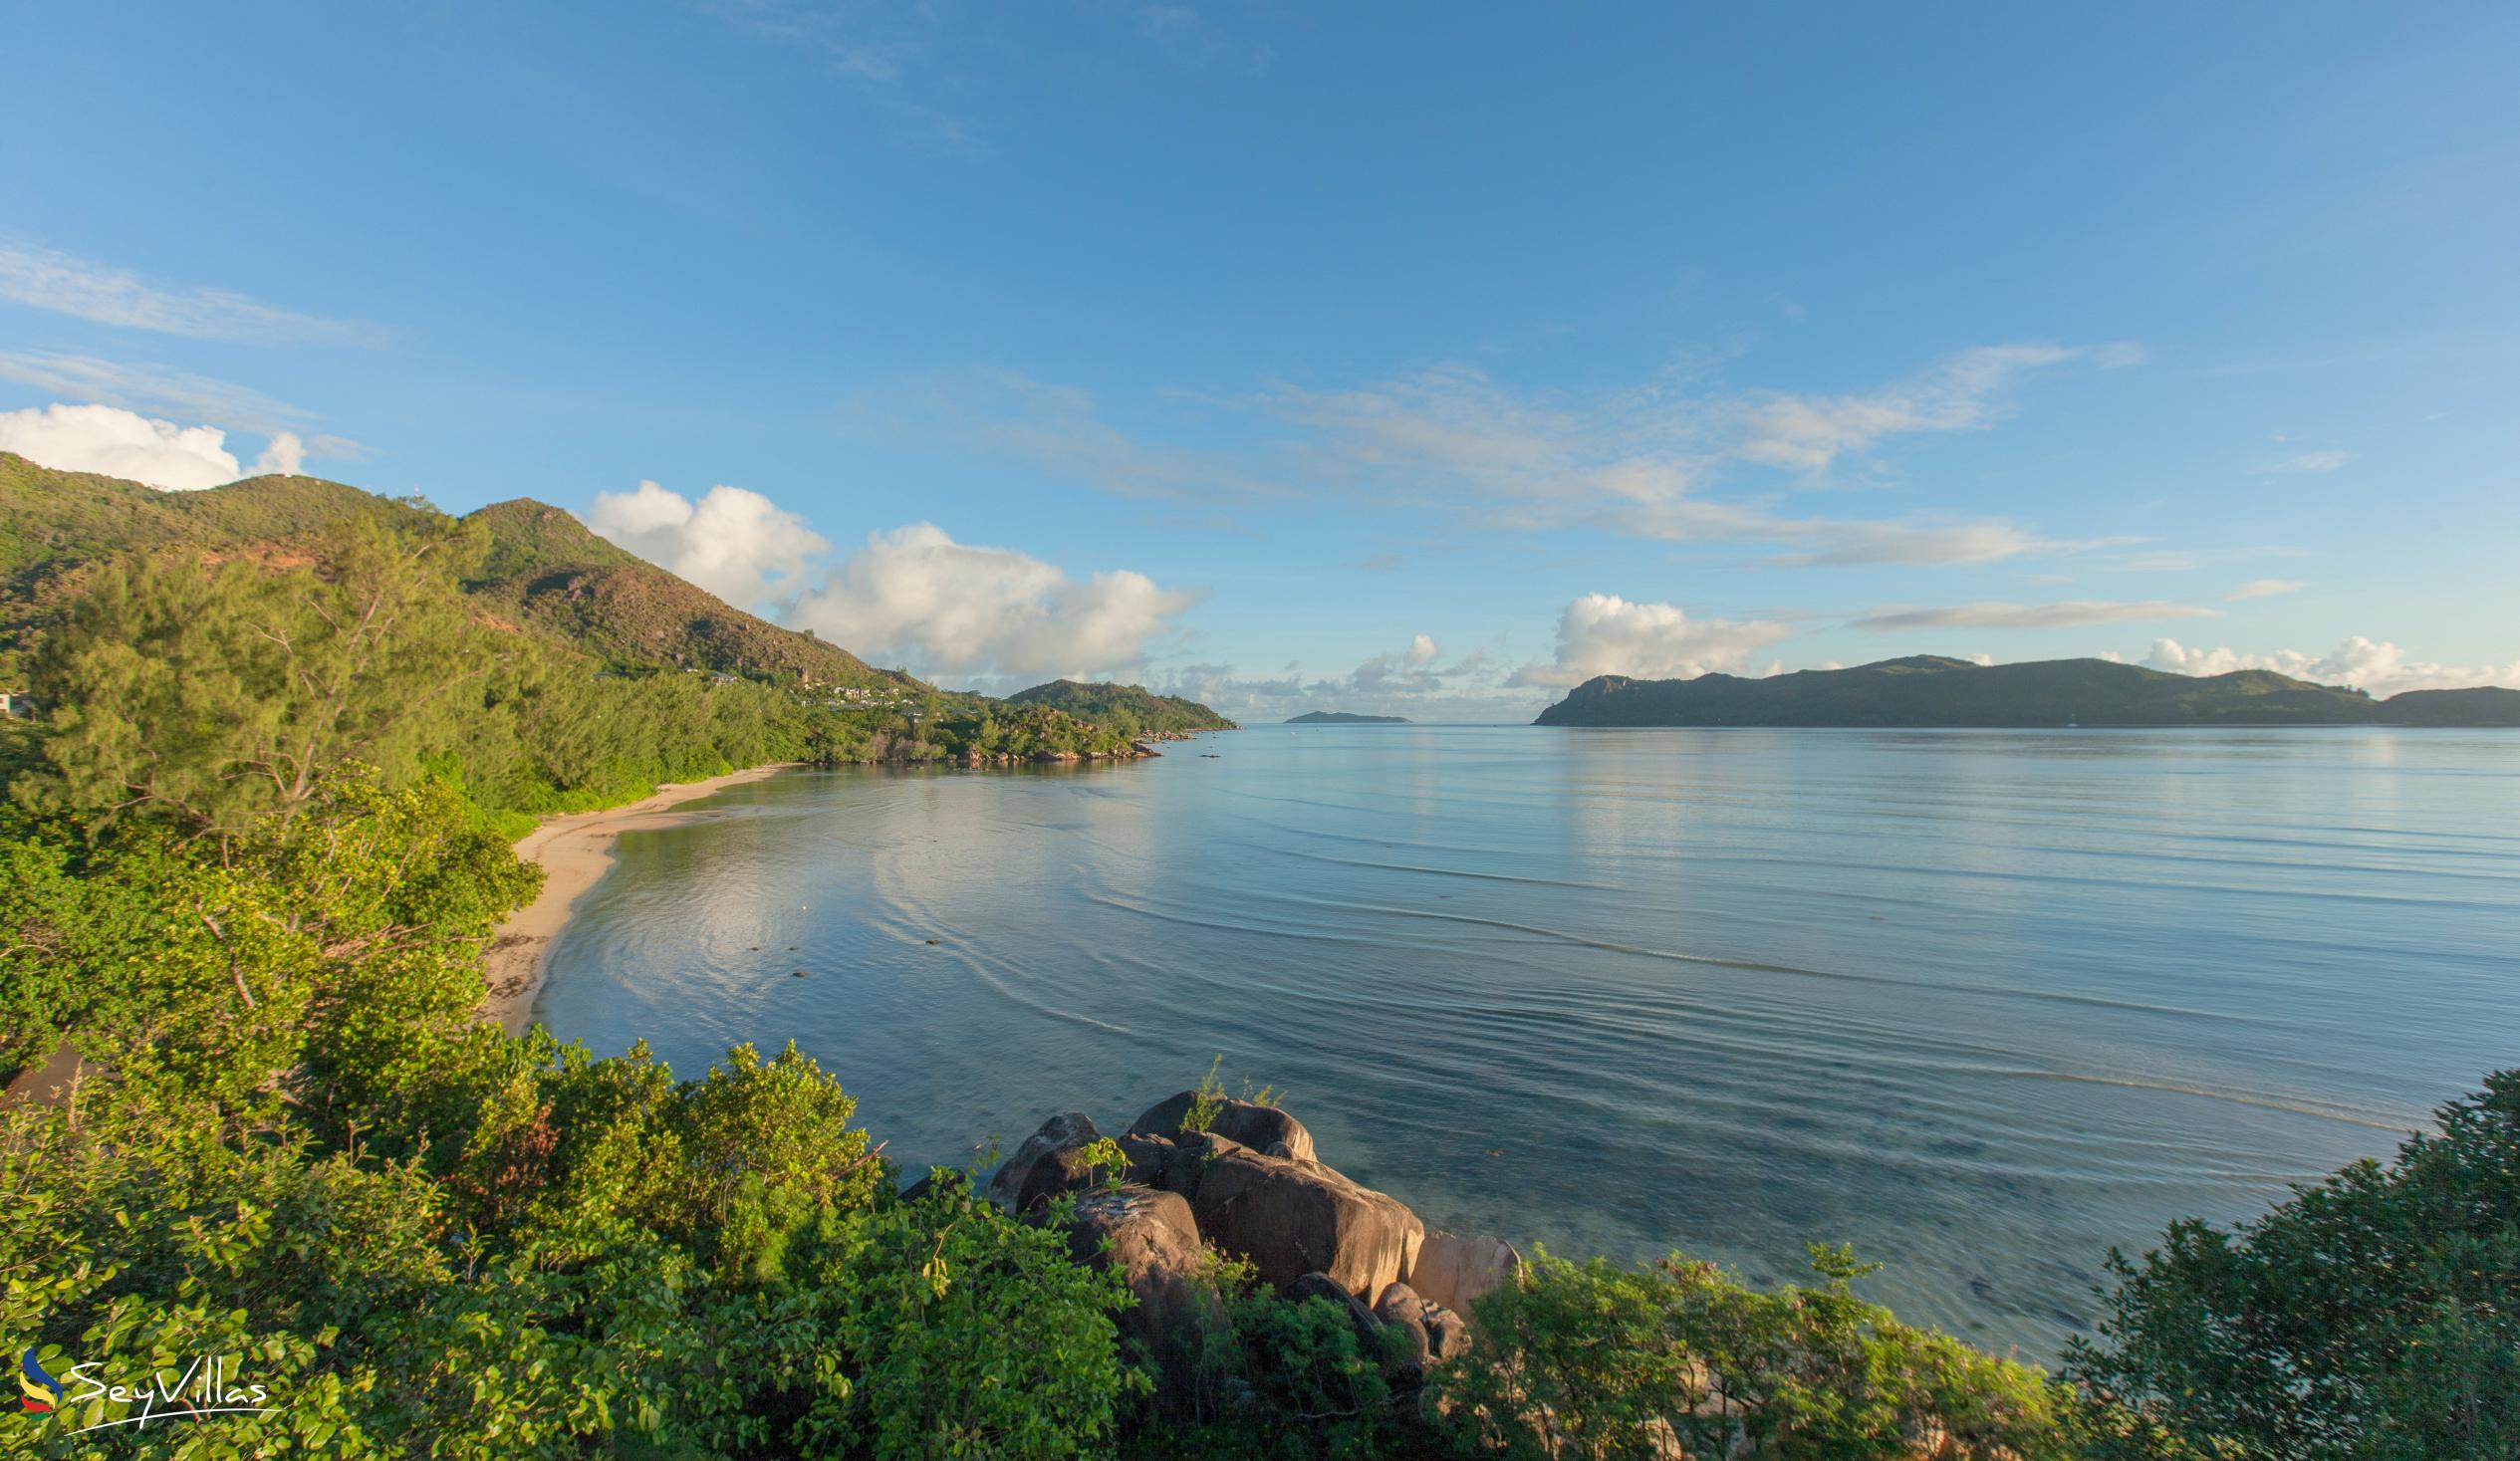 Foto 9: Anse Pasquière - Praslin (Seychelles)